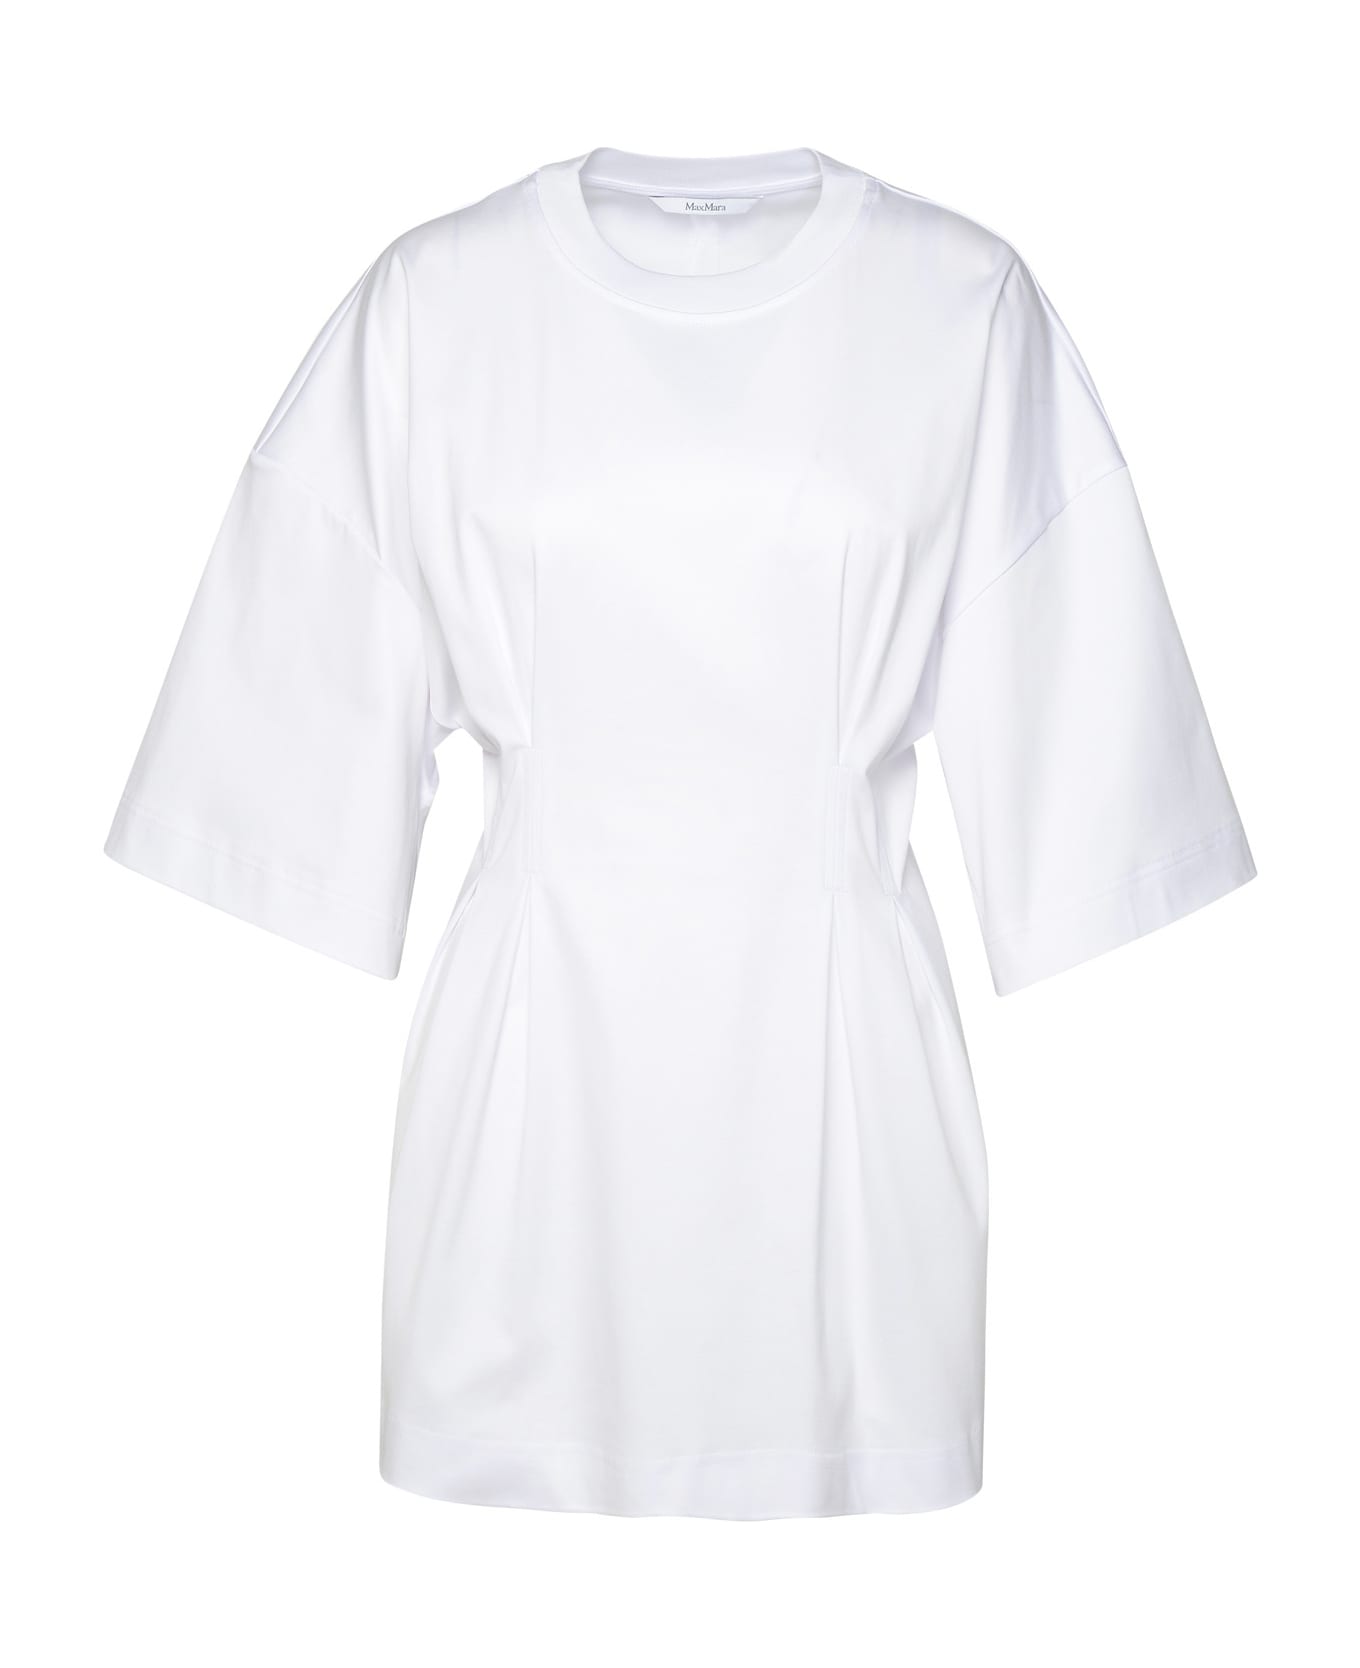 Max Mara 'giotto' White Cotton T-shirt - White